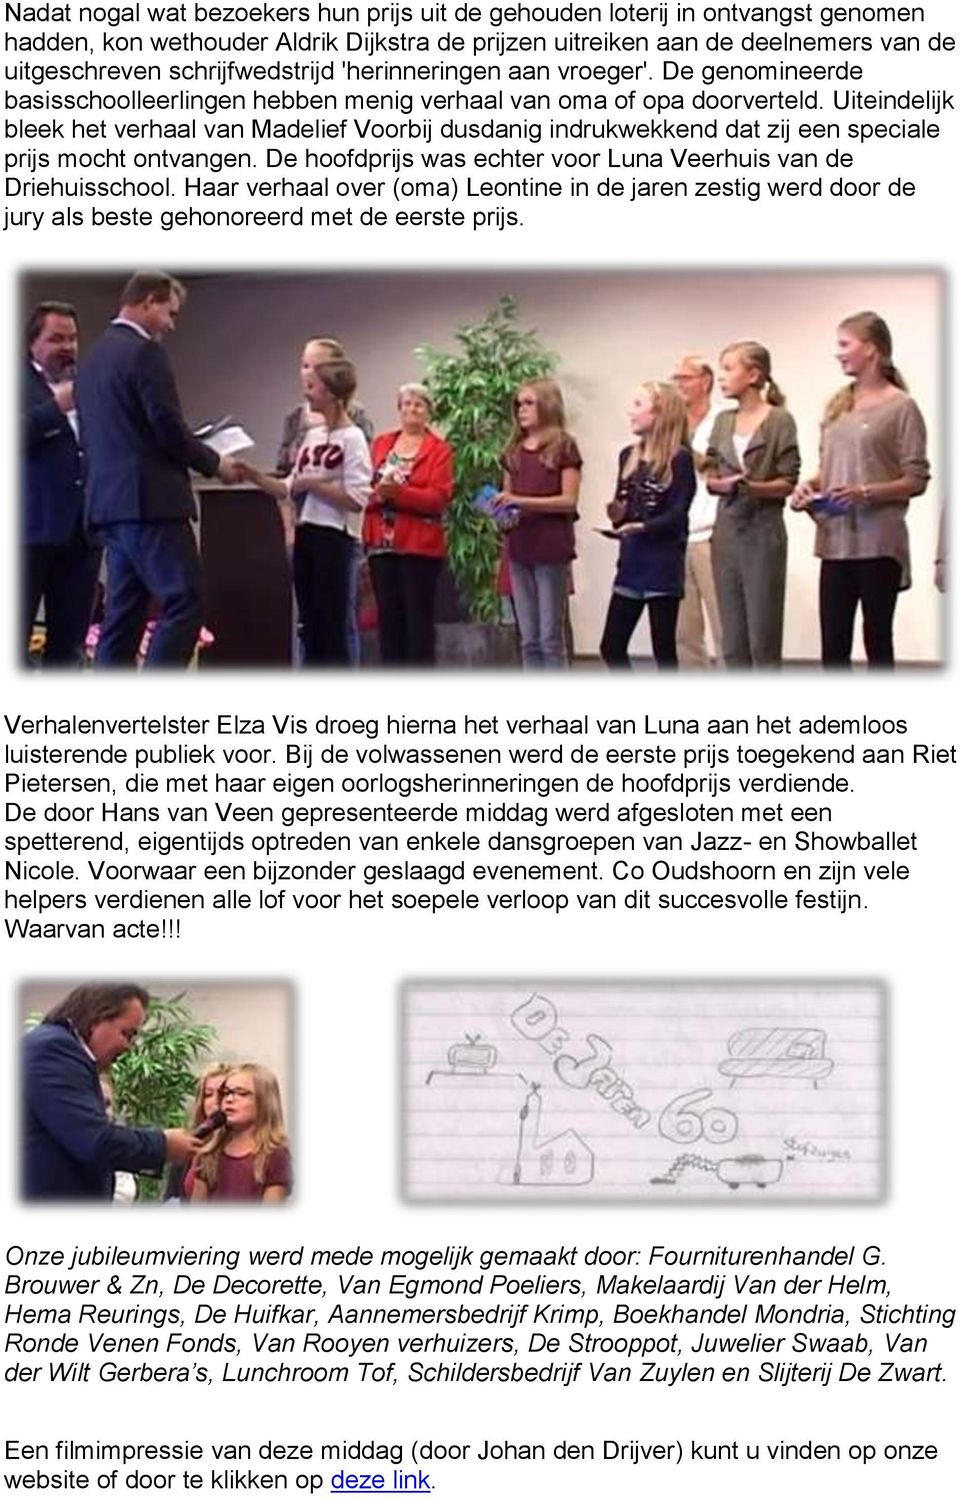 Uiteindelijk bleek het verhaal van Madelief Voorbij dusdanig indrukwekkend dat zij een speciale prijs mocht ontvangen. De hoofdprijs was echter voor Luna Veerhuis van de Driehuisschool.